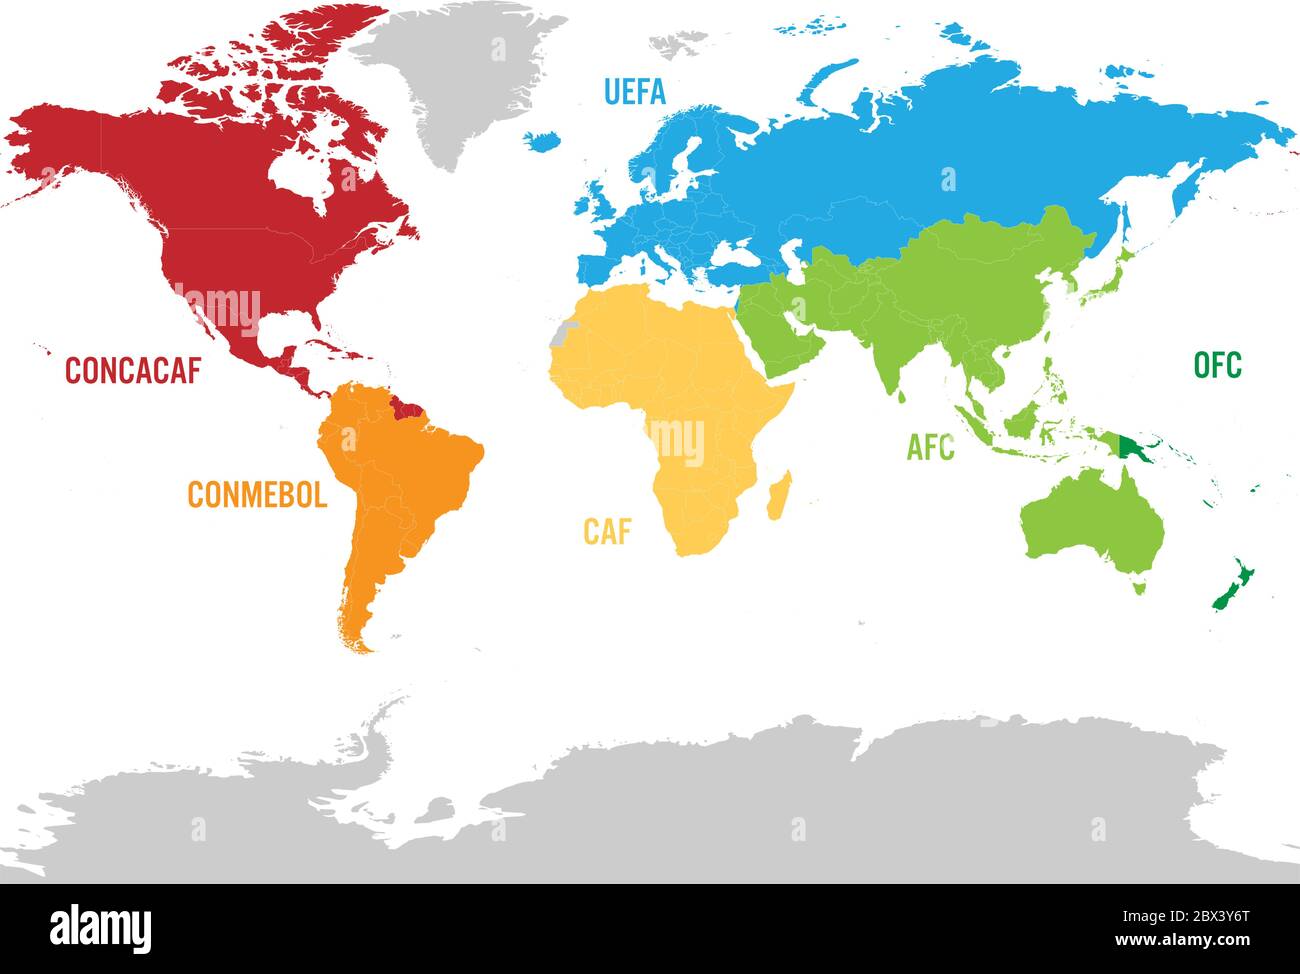 Karte von Fußball oder Fußball, Konföderationen - CONMEBOL, CONCACAF, CAF,  UEFA AFC und OFC Stock-Vektorgrafik - Alamy